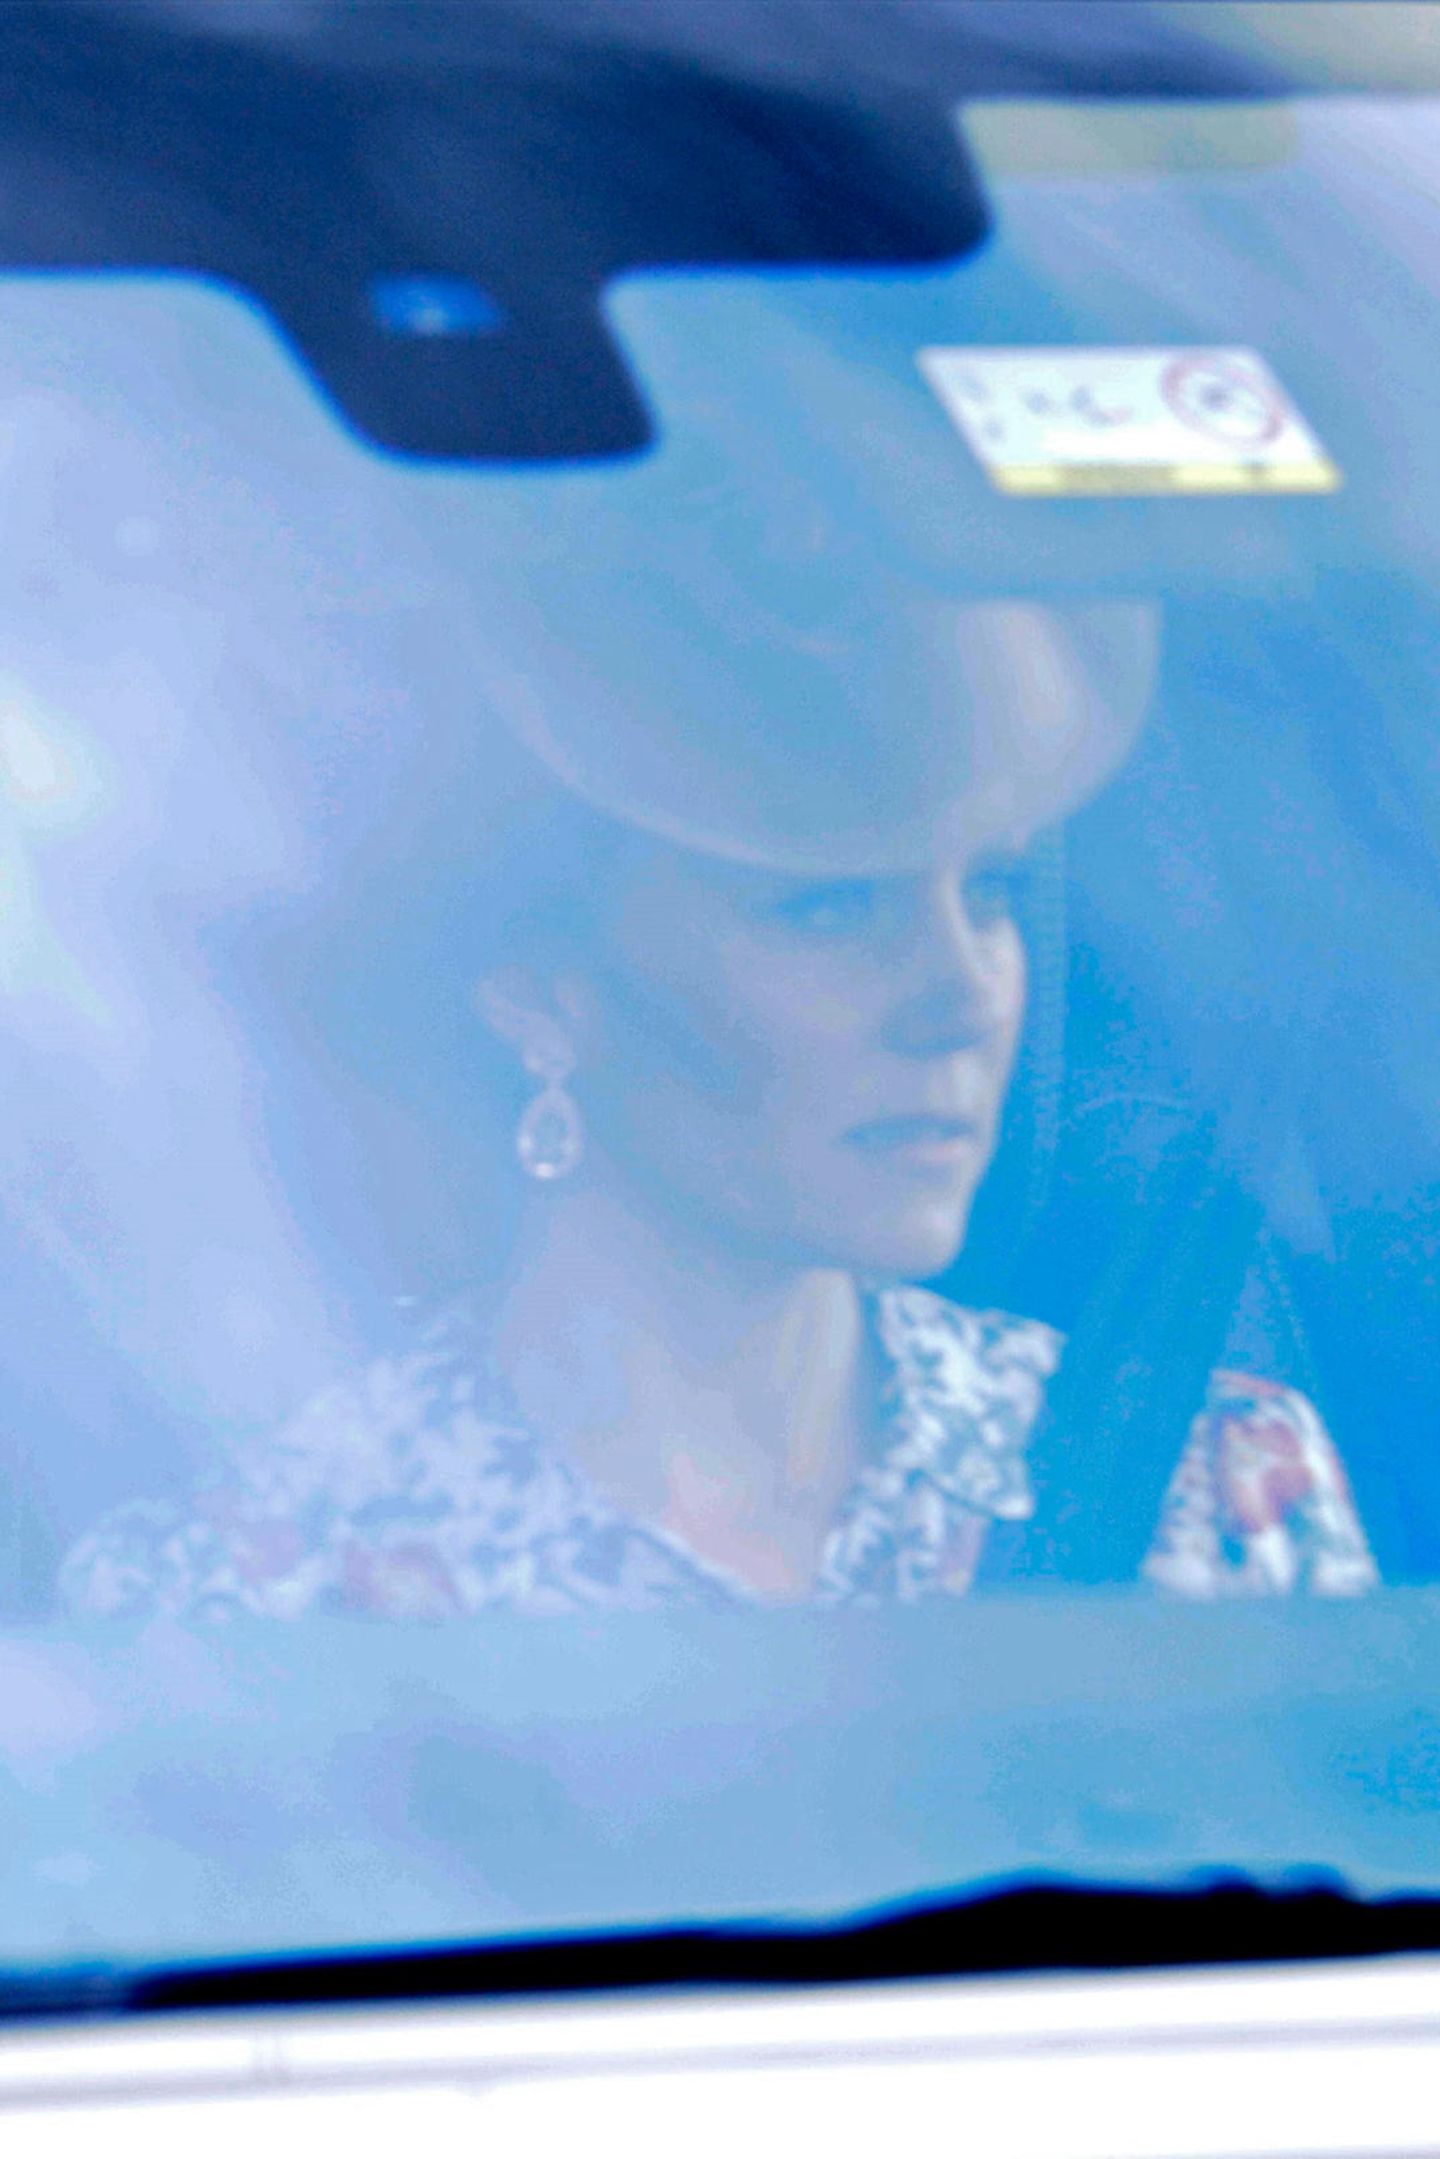 Auf einem Bild, das Herzogin Catherine auf dem Weg zur Trauung ihrer Schwester Pippa zeigt, ist zu sehen, dass sie ein Blumenkleid im Hemdstil trägt. Das Kleid des spanischen Labels "Zara" ist mit einem Preis von circa 40 Euro sehr erschwinglich. Vielleicht zu erschwinglich für diesen sehr wichtigen Anlass?